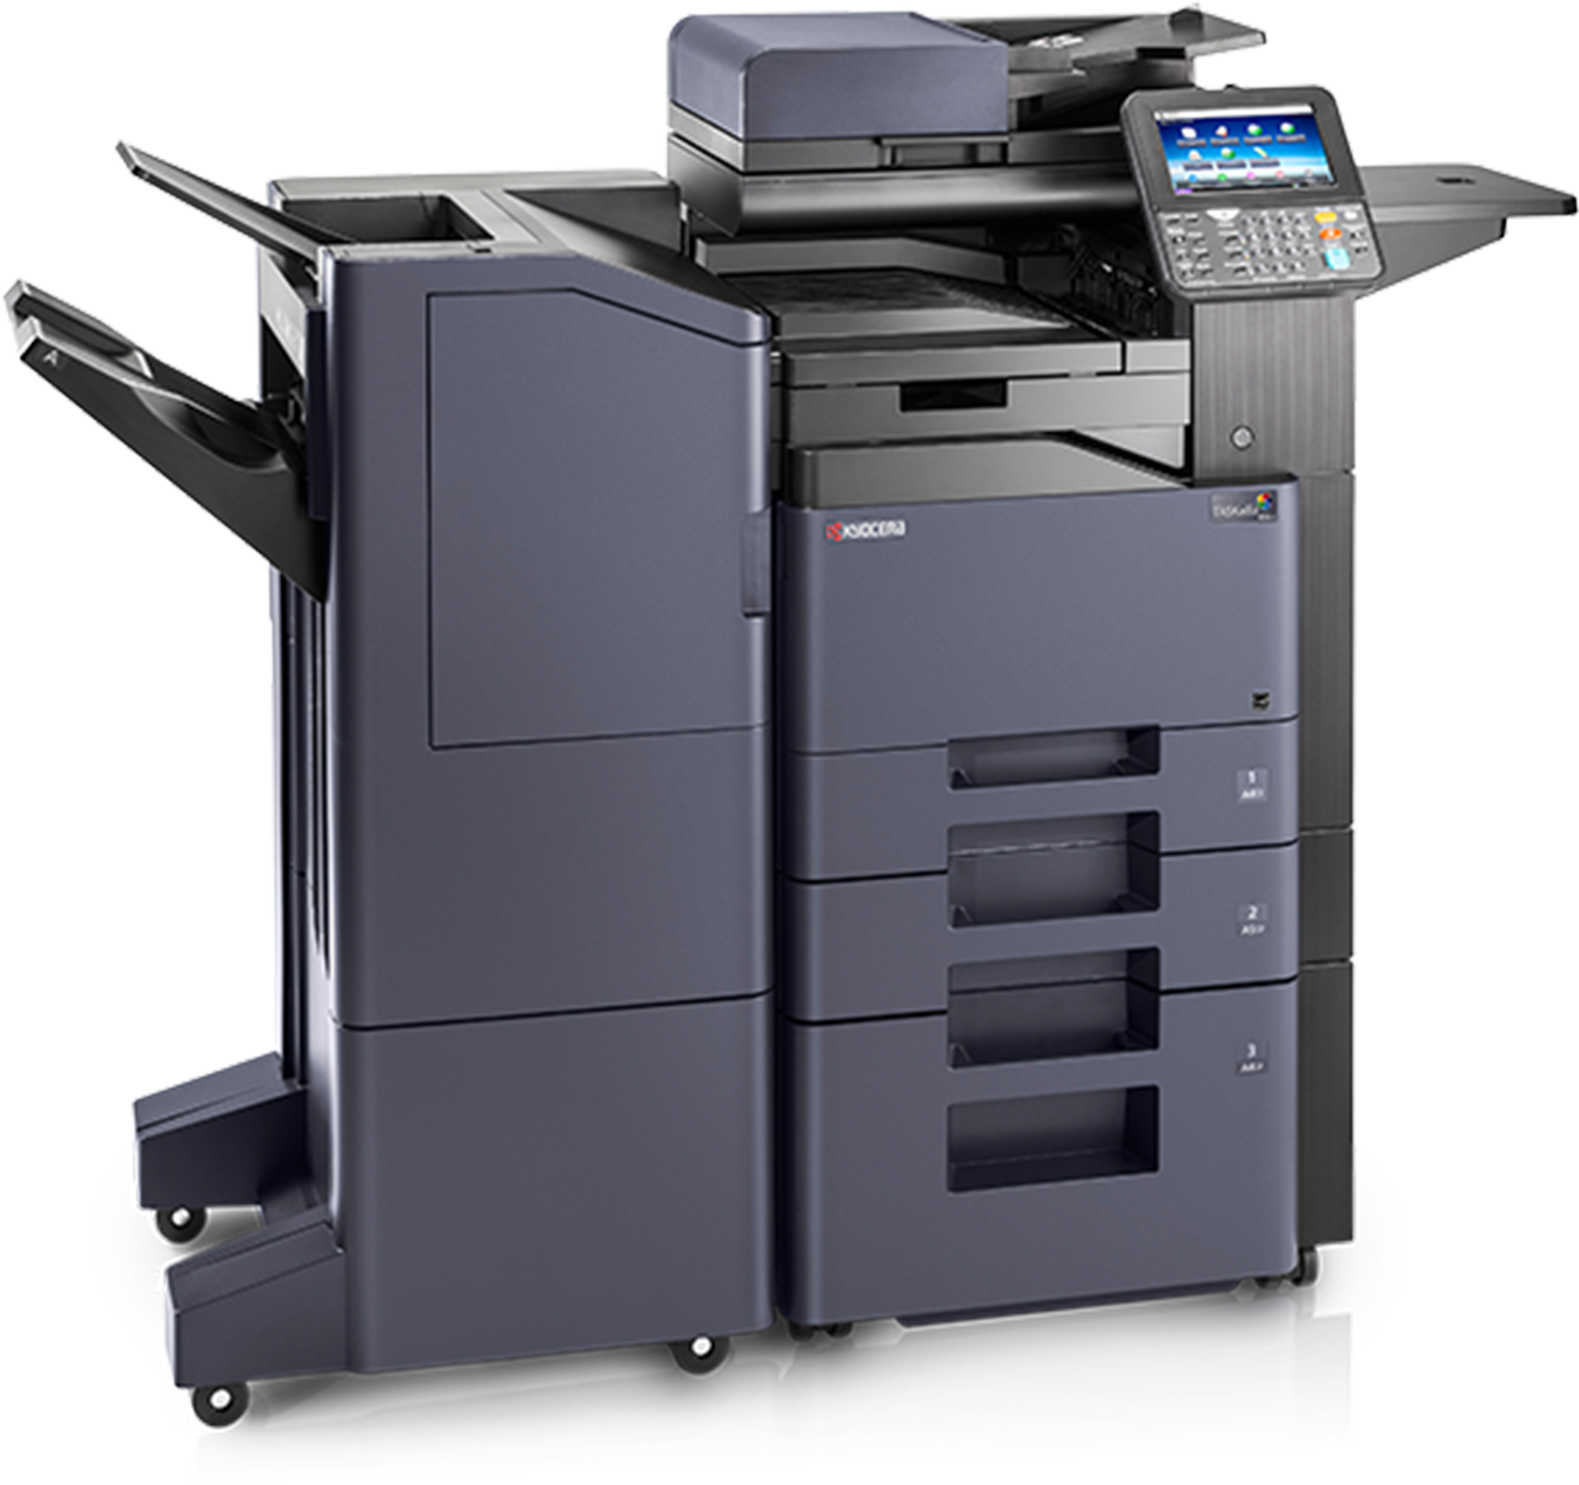 Copystar copiers & laser printers